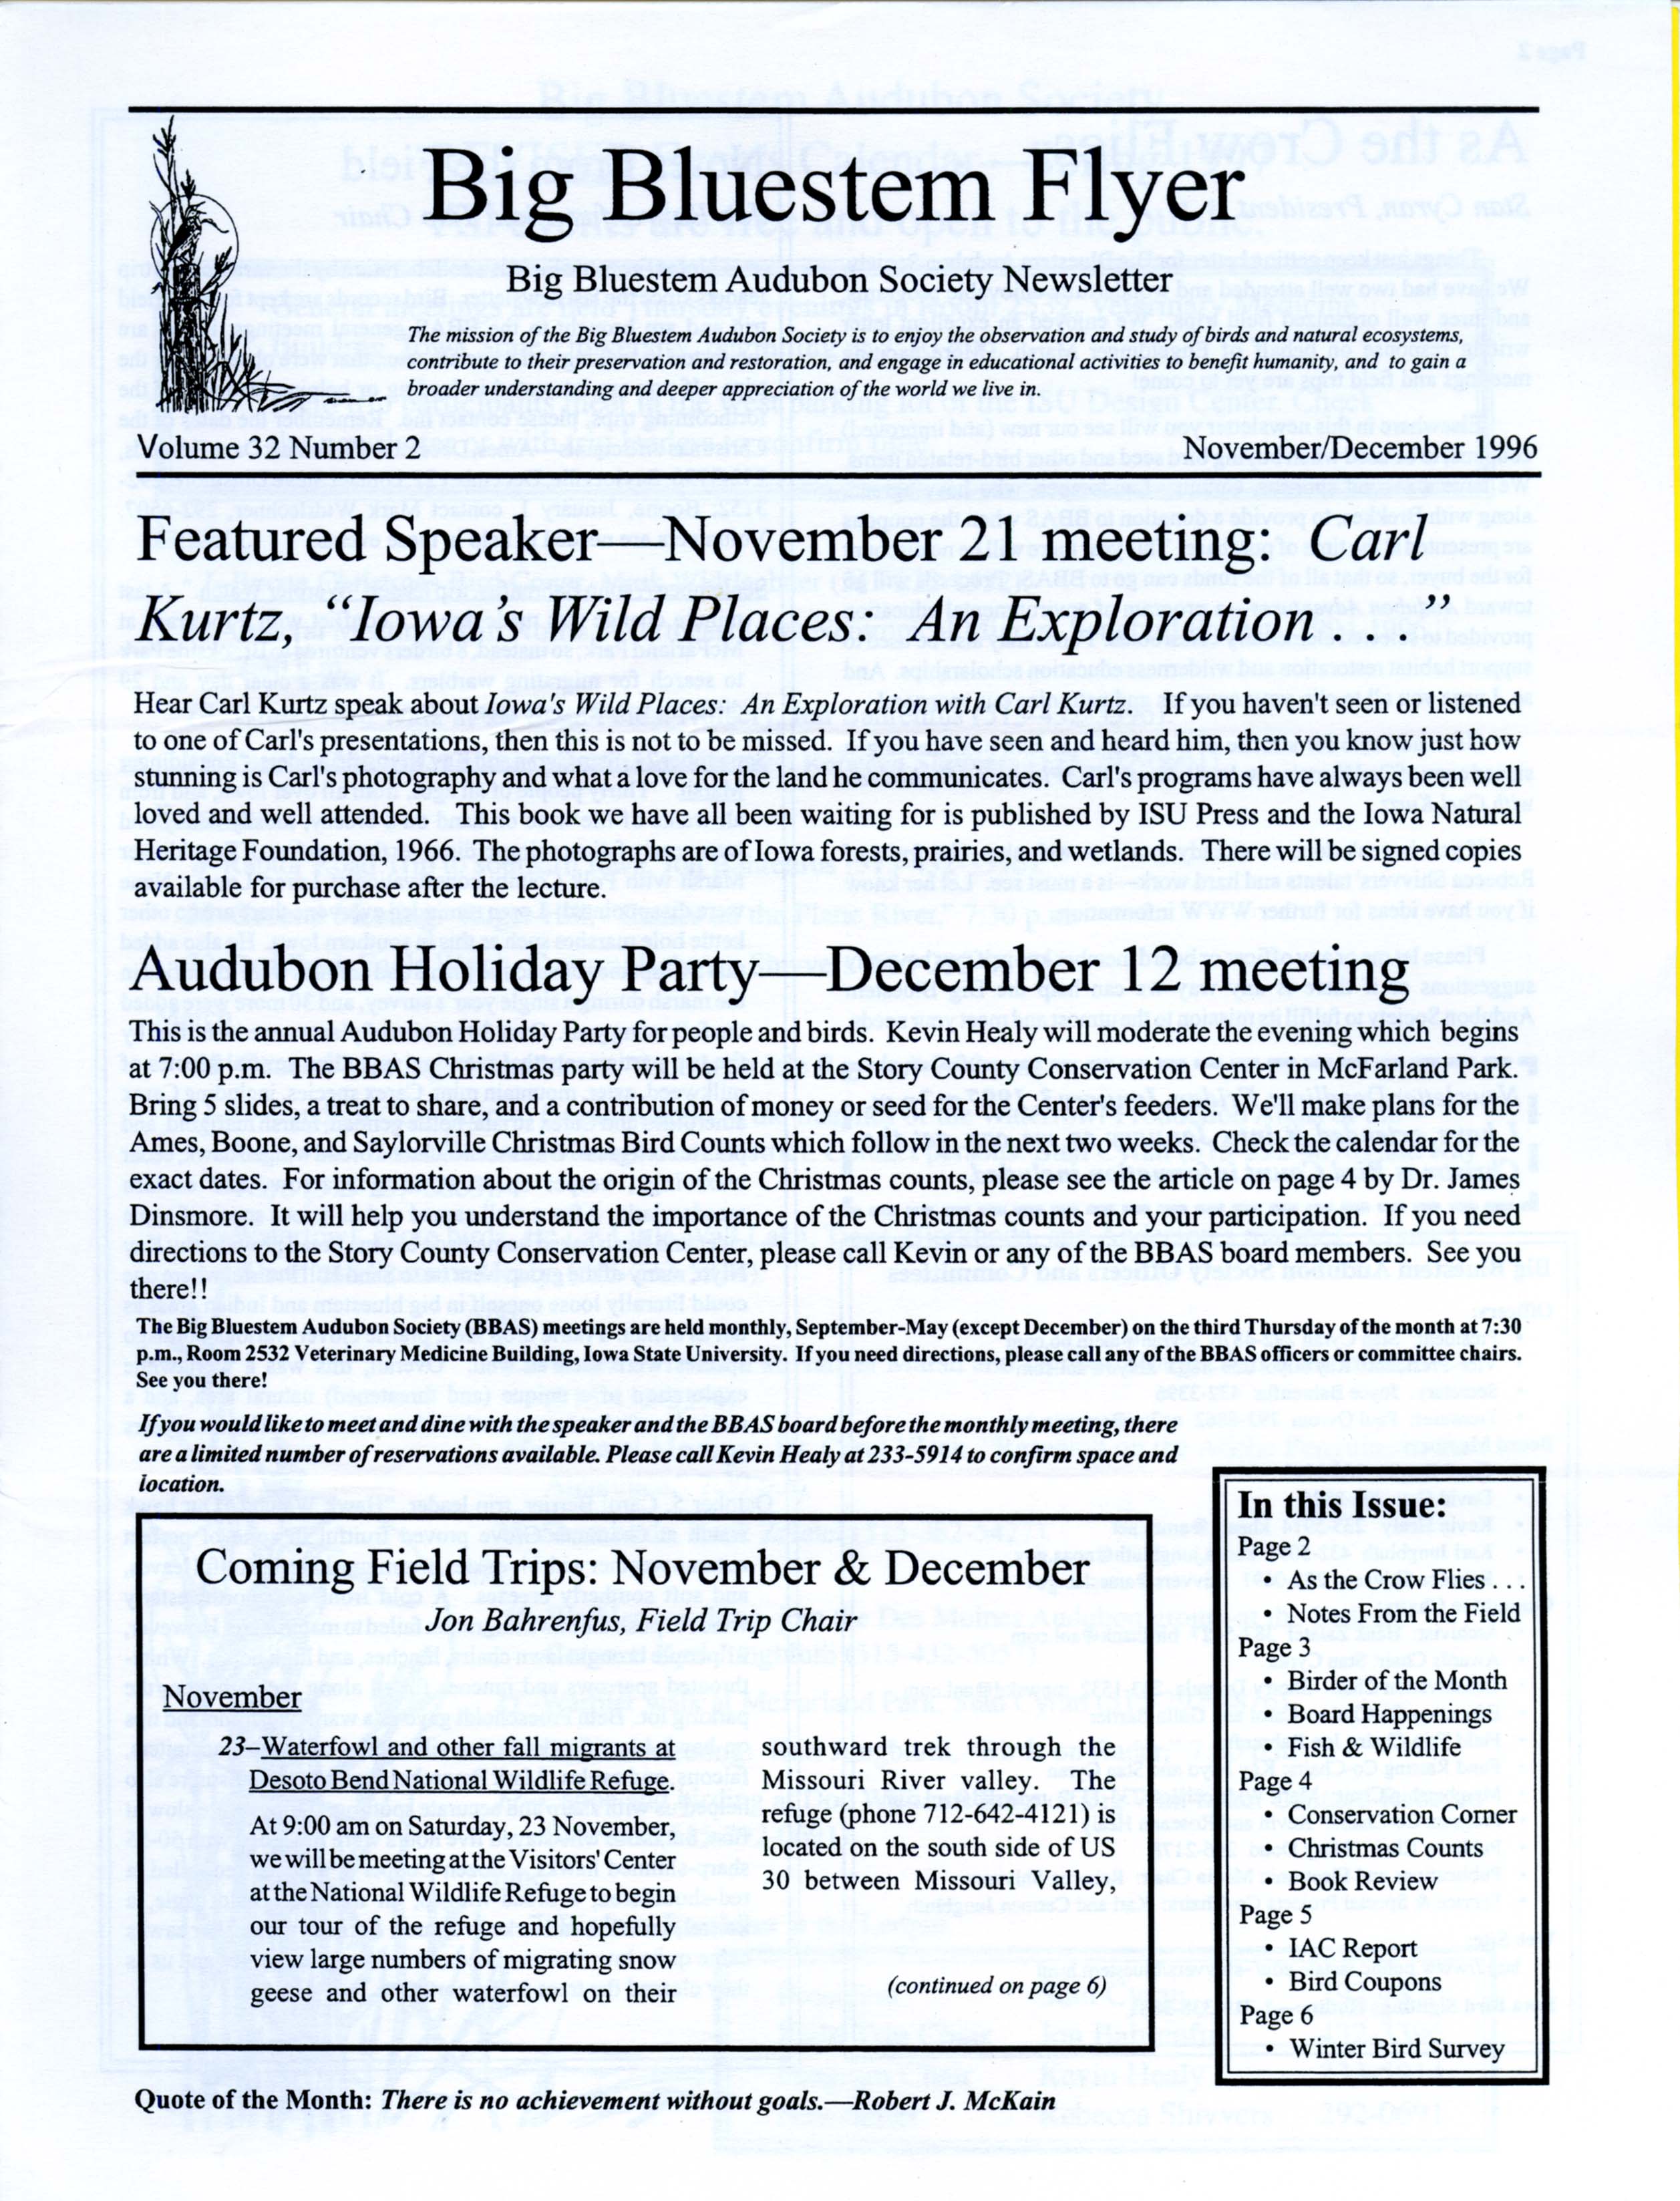 Big Bluestem Flyer, Volume 32, Number 2, November/ December 1996